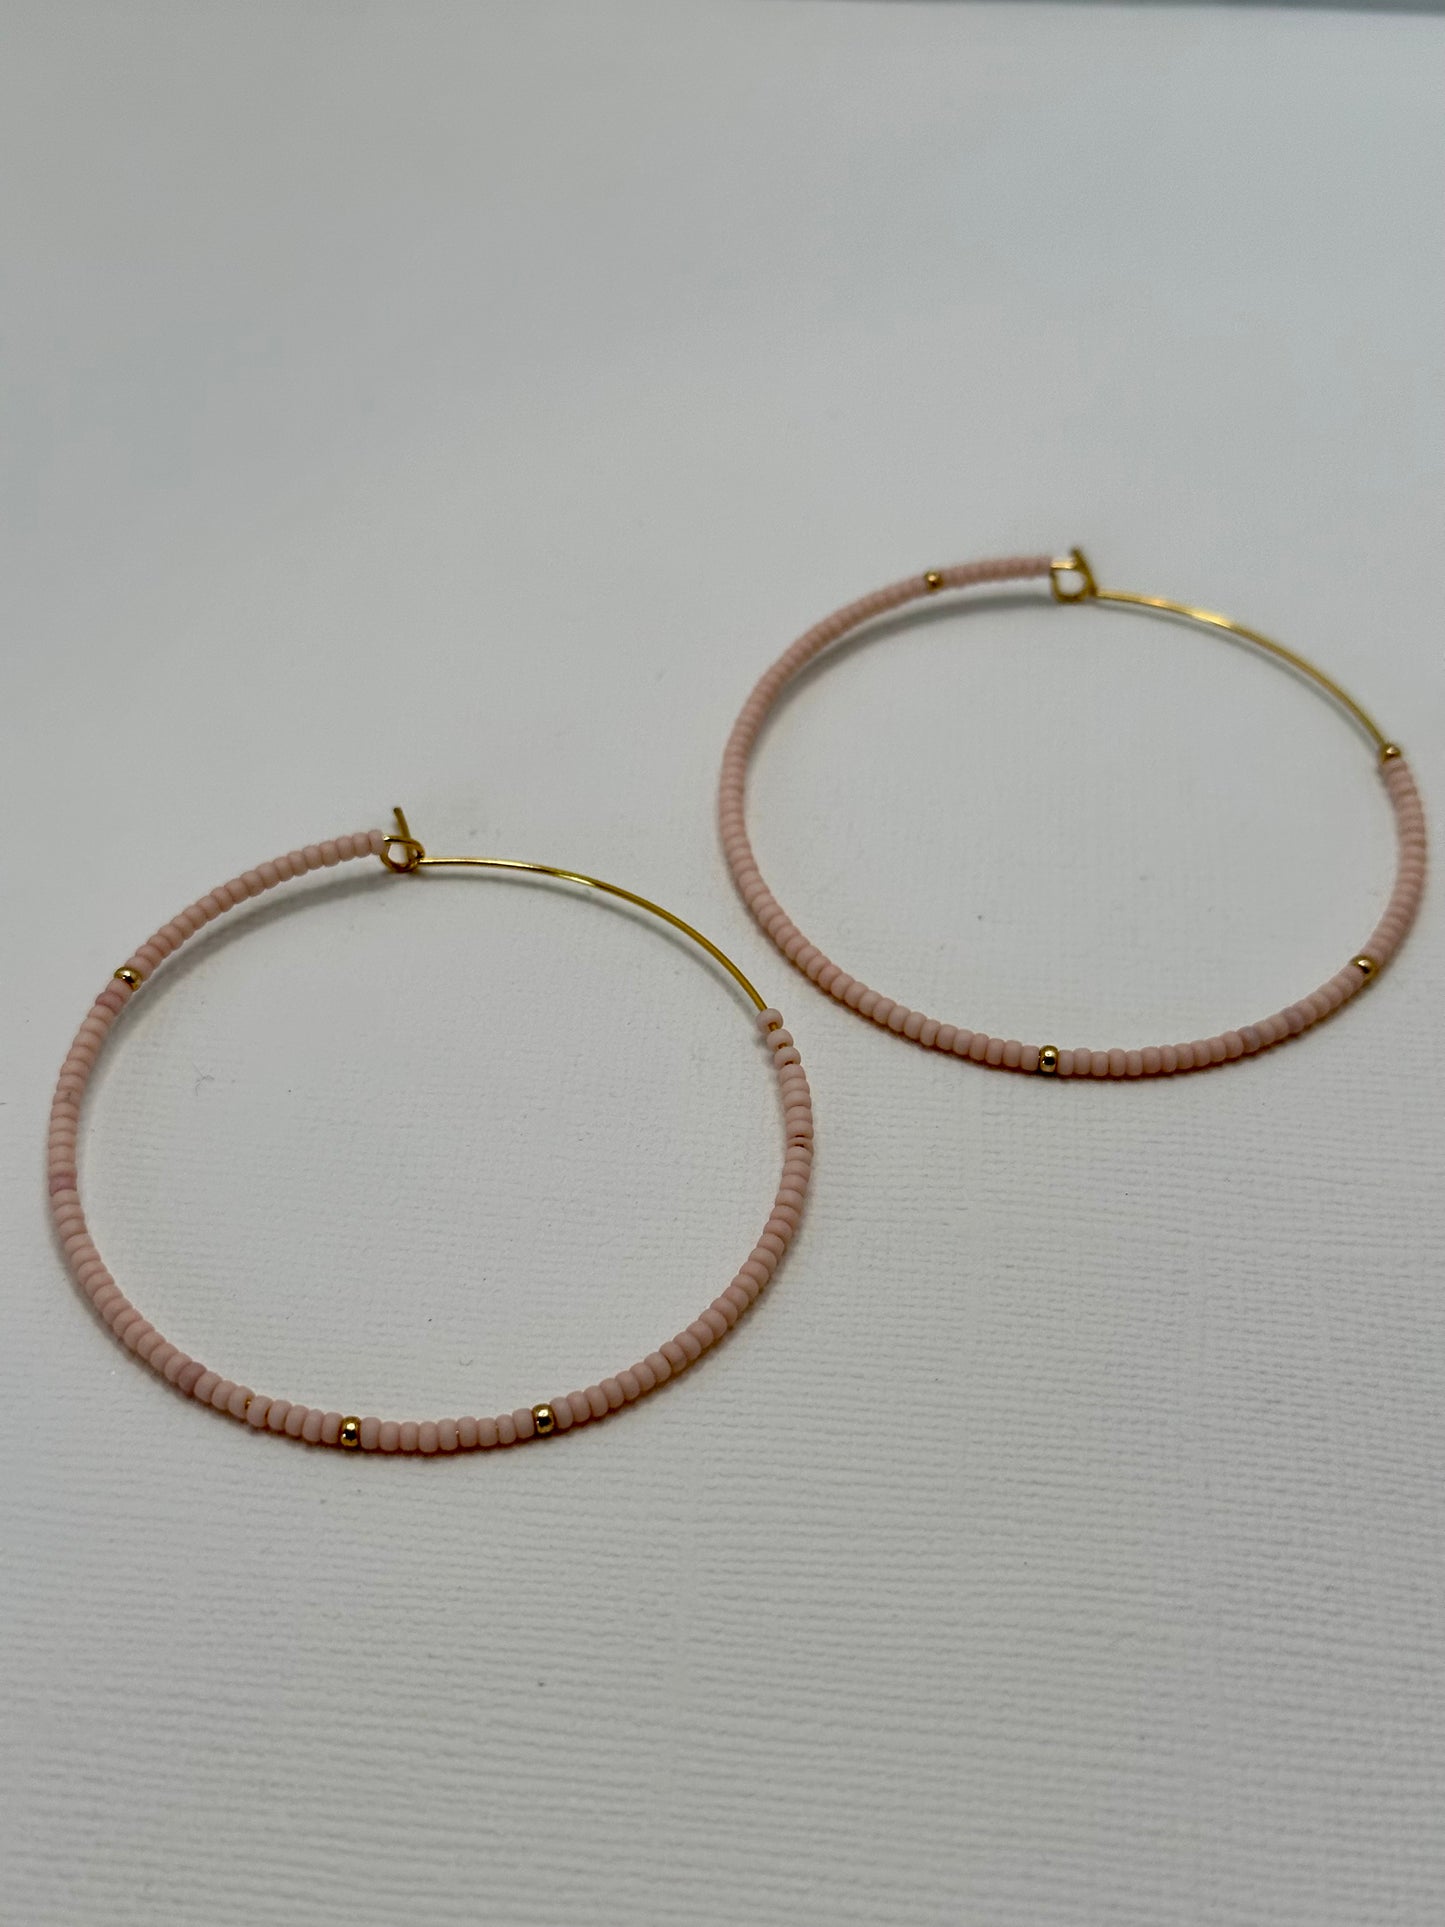 Pale Pink and Gold  Hoop Earrings